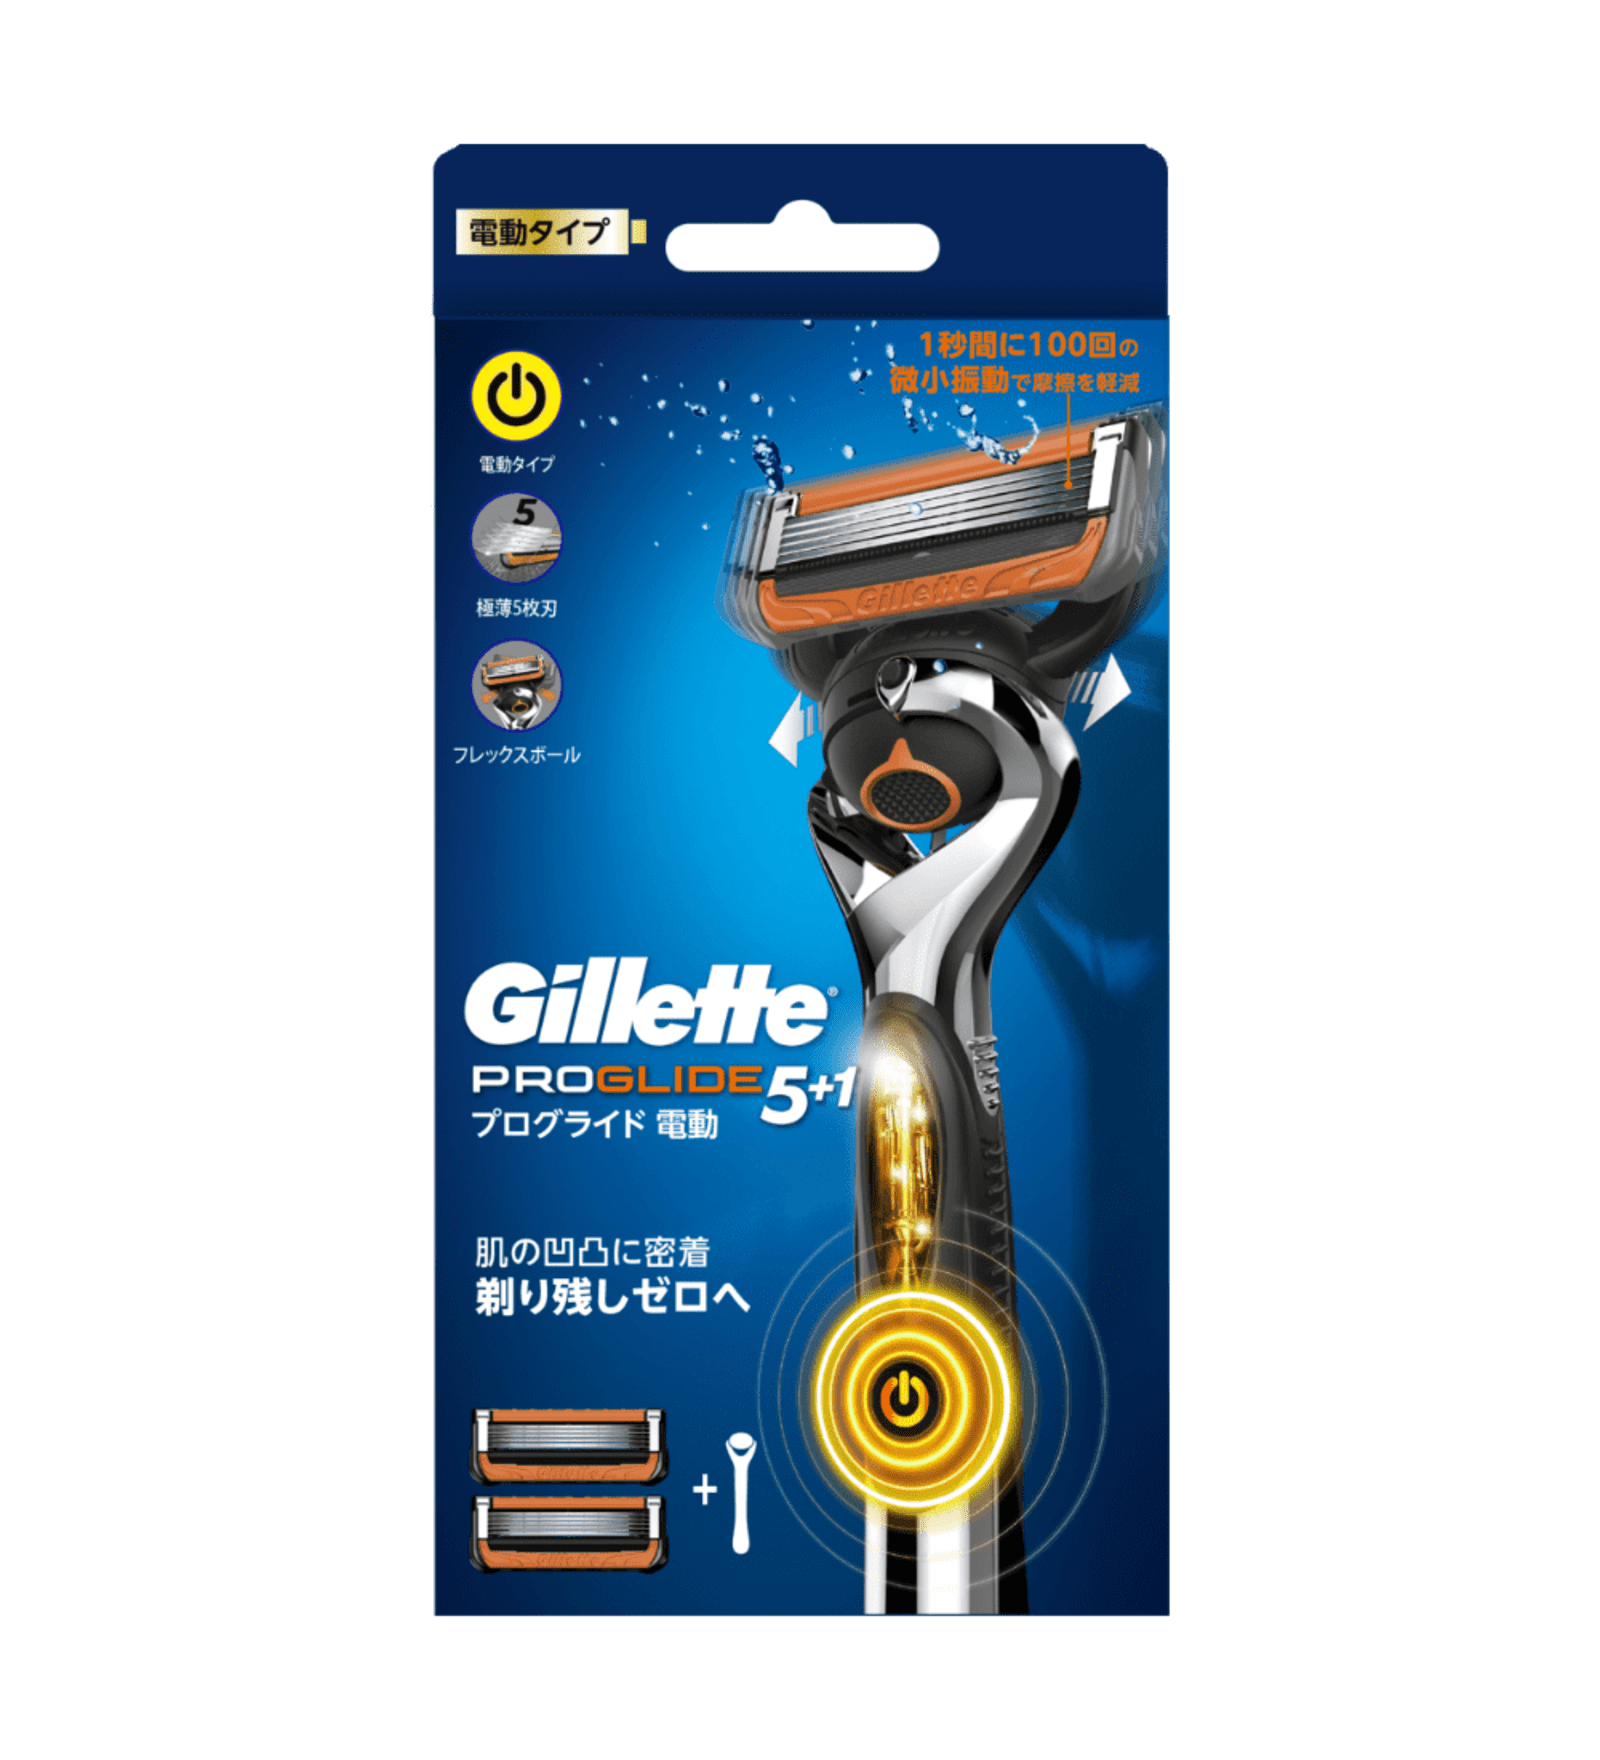 【正規品】Gillette ジレット プログライド 電動タイプ 替刃16個